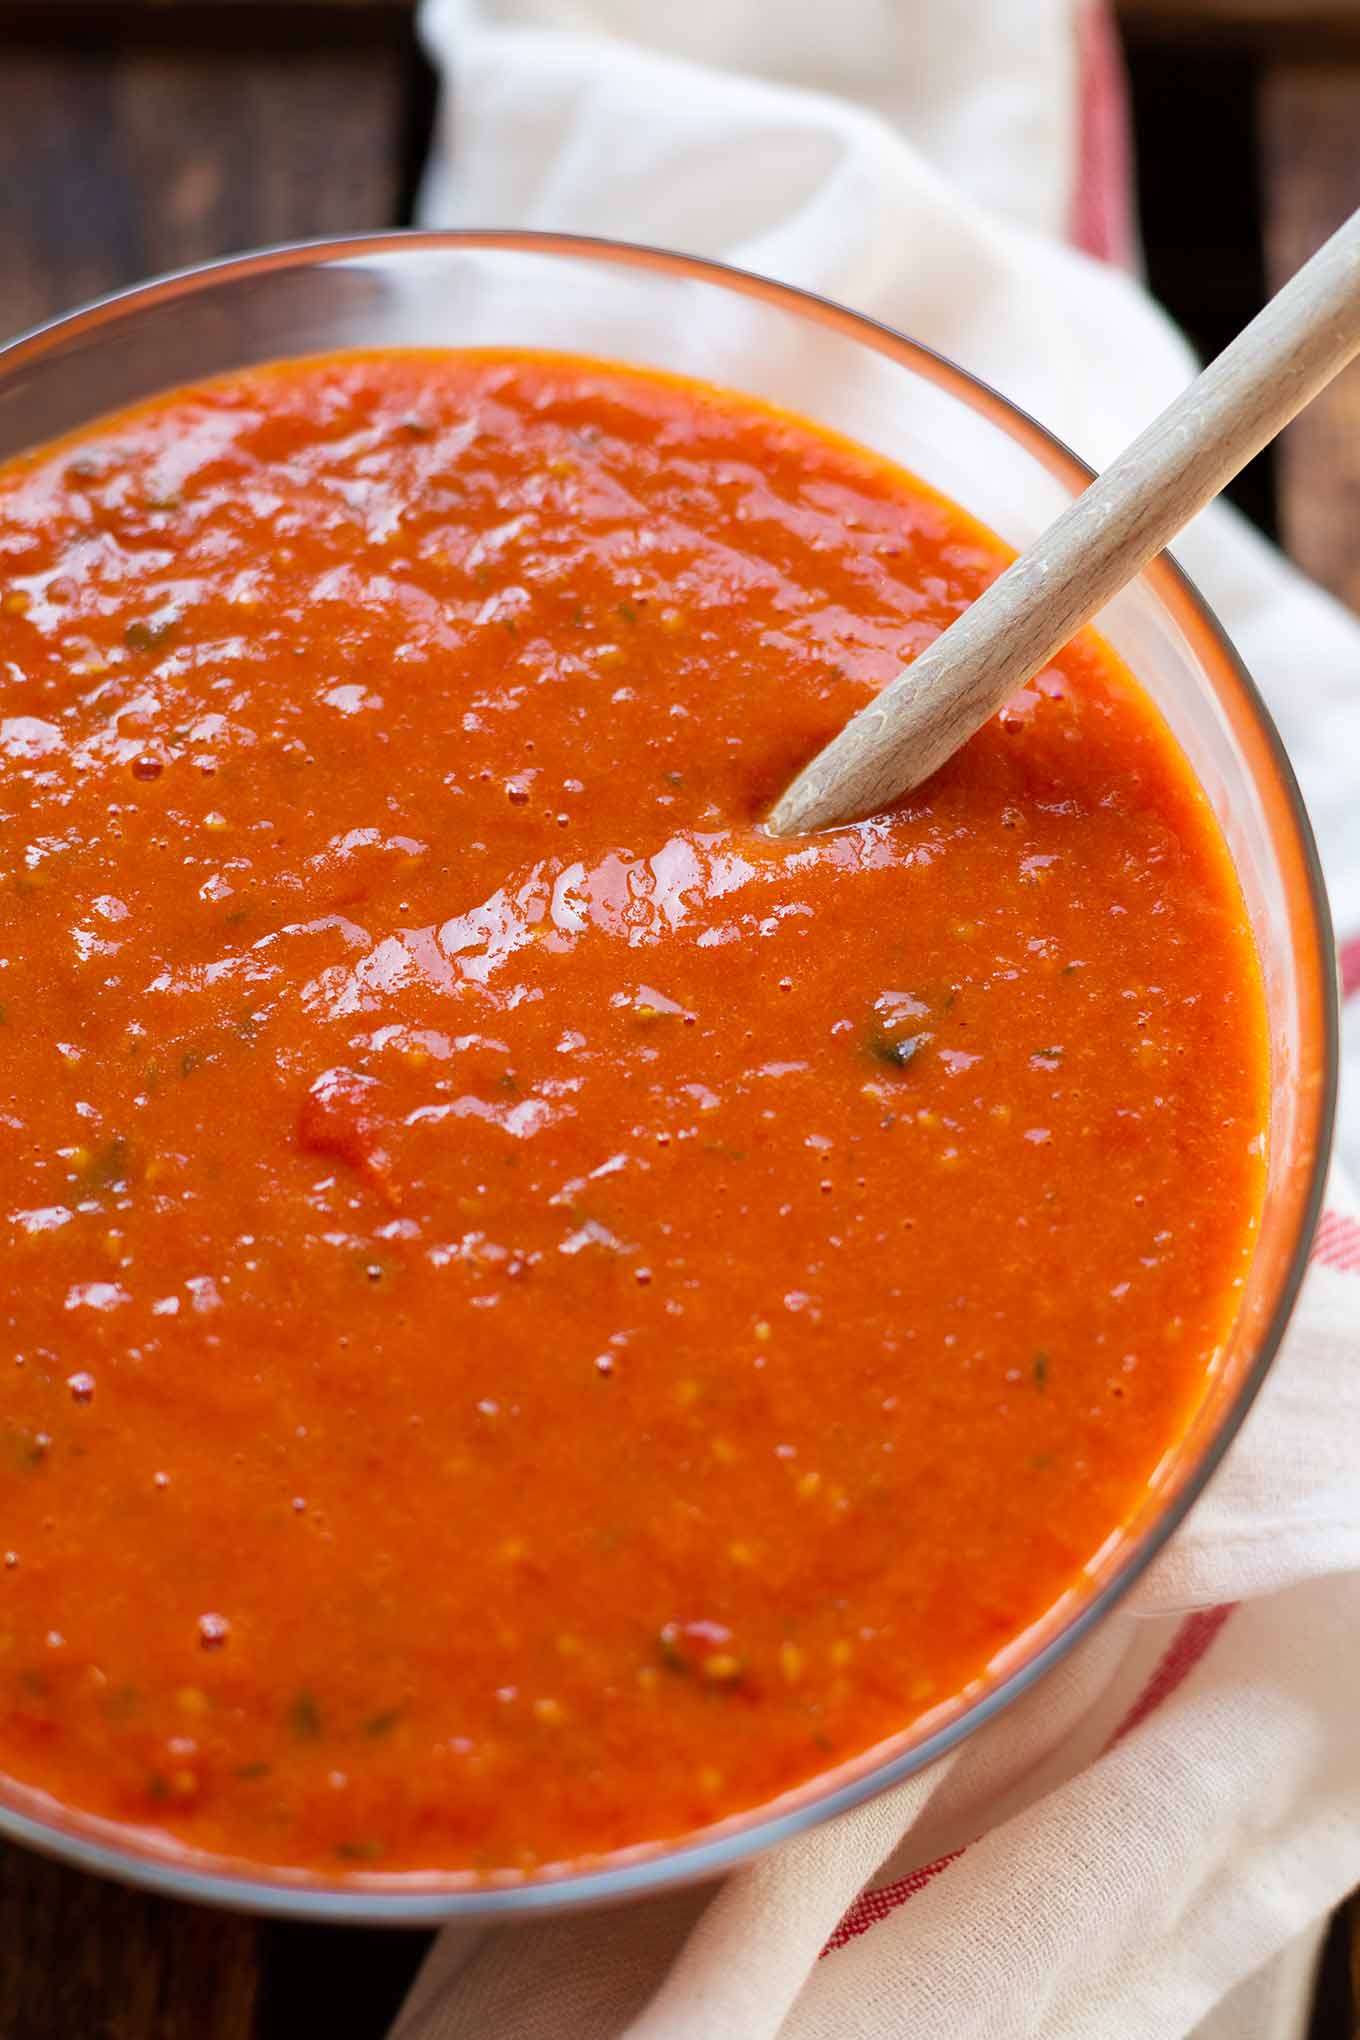 Einfache Tomatensauce aus dem Ofen. Tomatensauce selber machen war noch nie so einfach wie mit diesem schnellen Rezept. Unbedingt ausprobieren! - Kochkarussell.com #tomatensauce #selbermachen #ofentomatensauce #rezept